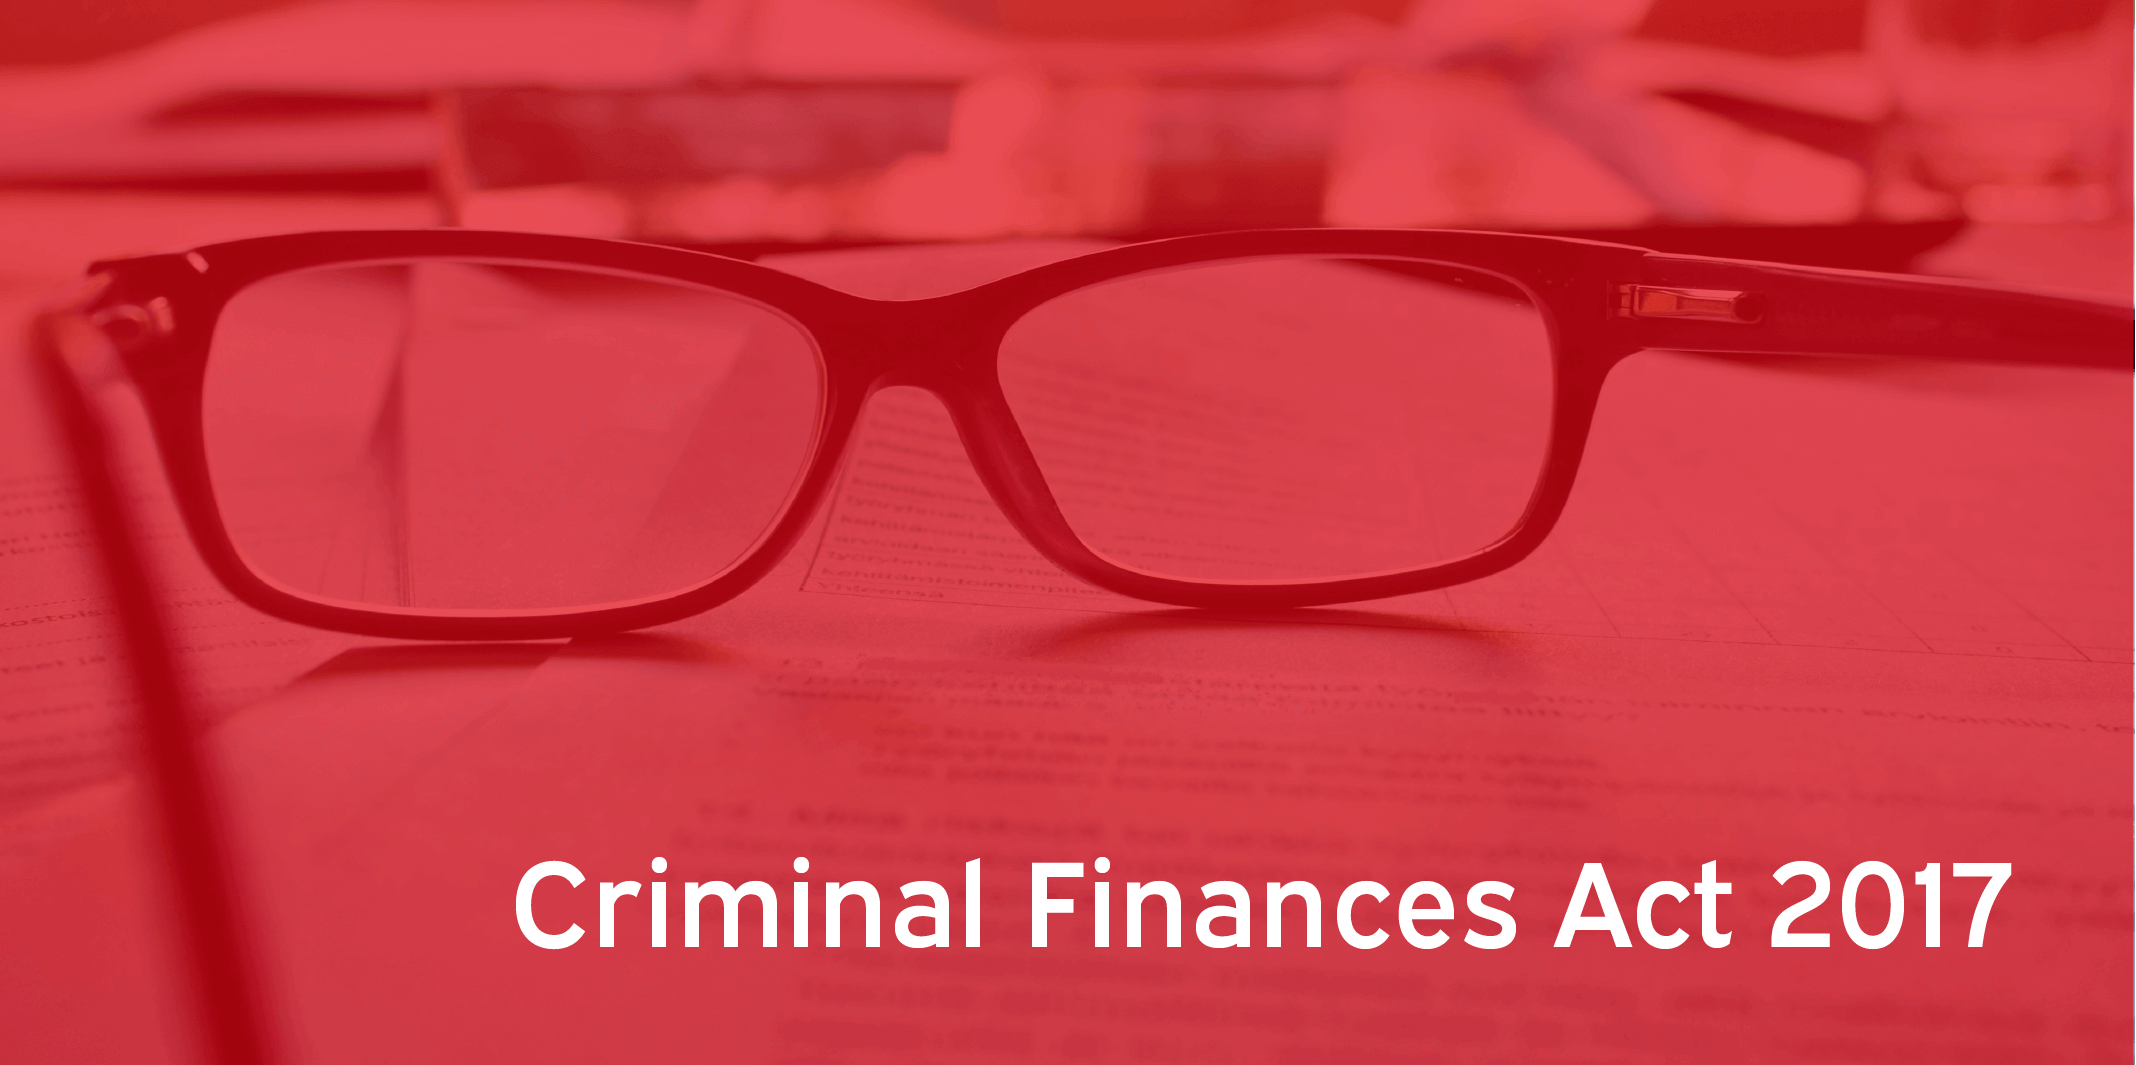 Criminal Finances Act 2017 